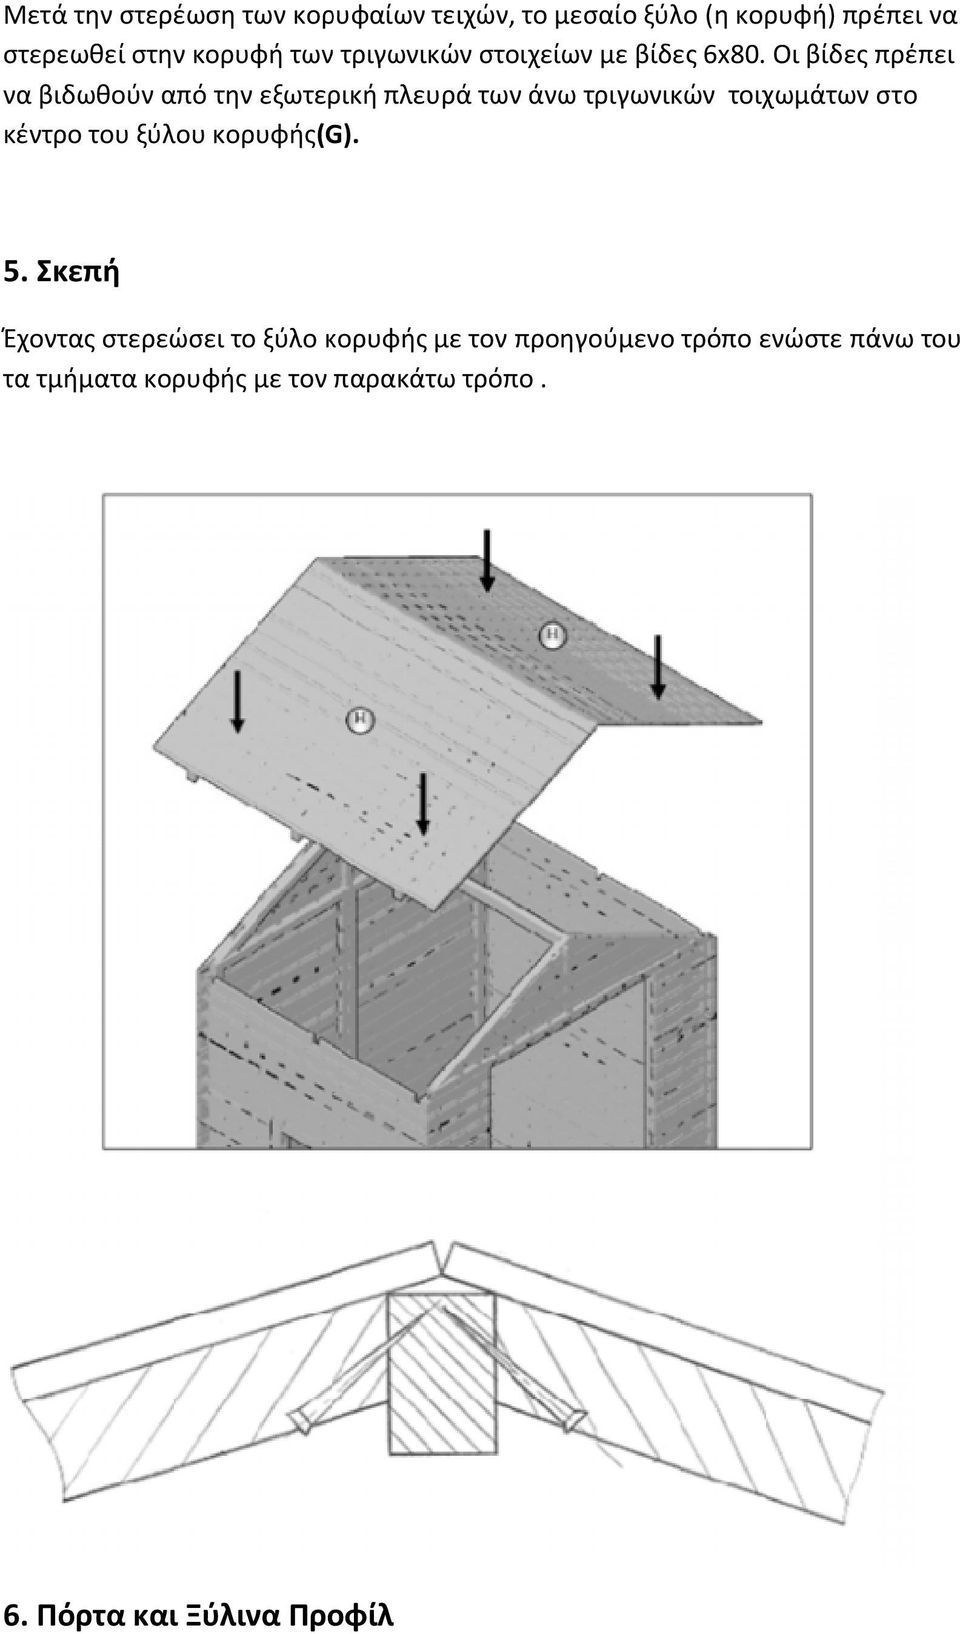 Οι βίδες πρέπει να βιδωθούν από την εξωτερική πλευρά των άνω τριγωνικών τοιχωμάτων στo κέντρο του